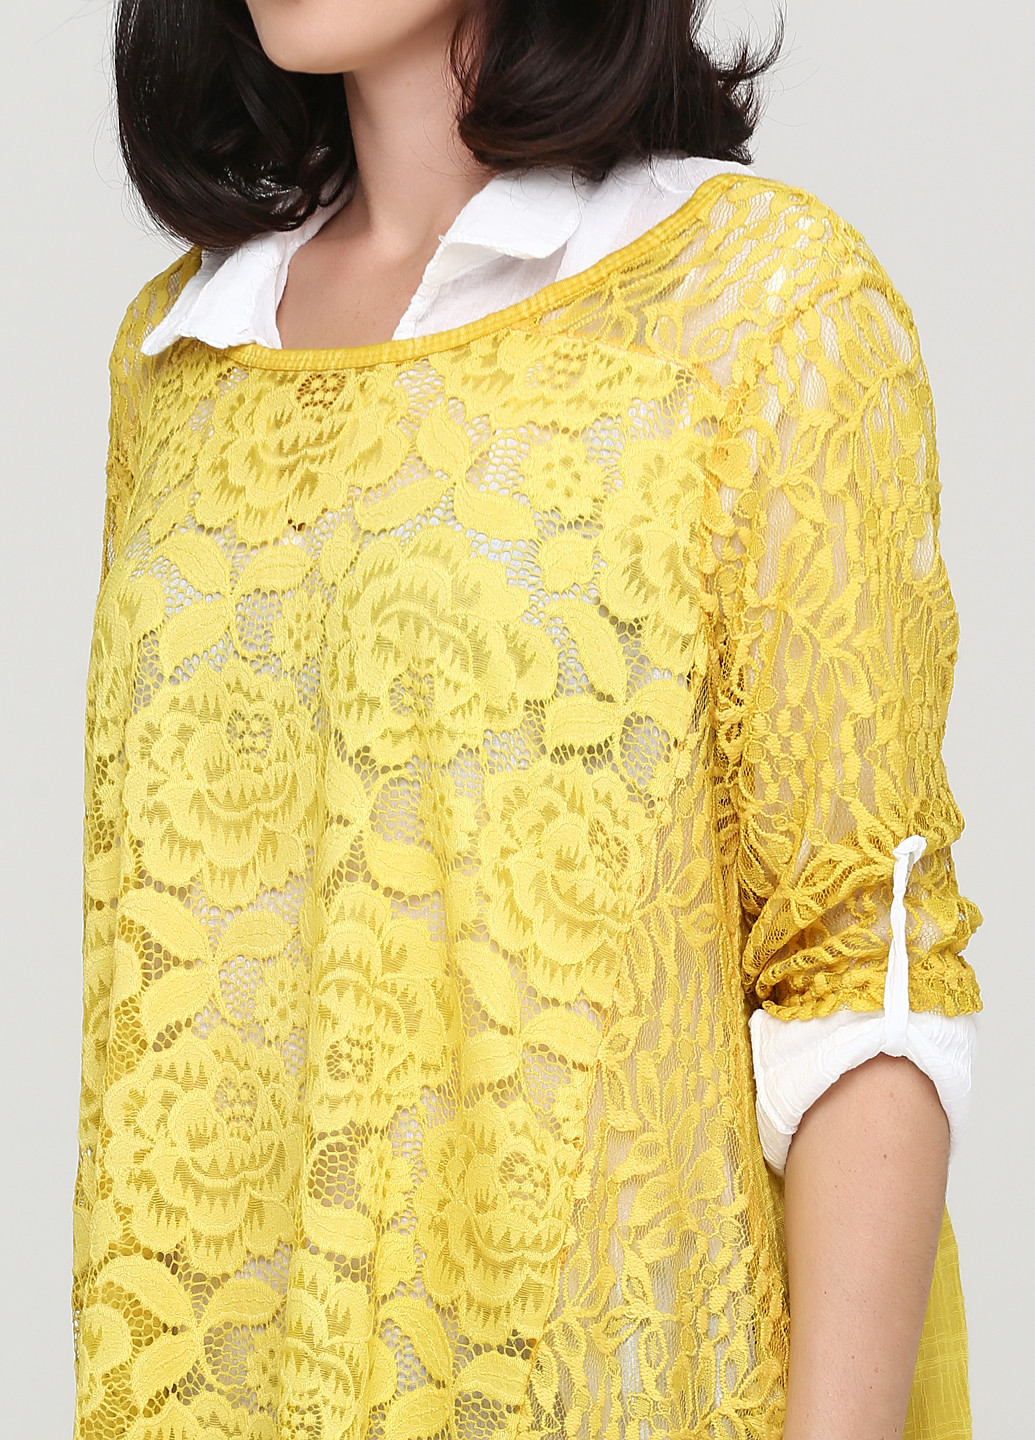 Желтый демисезонный комплект (туника, блуза) Made in Italy